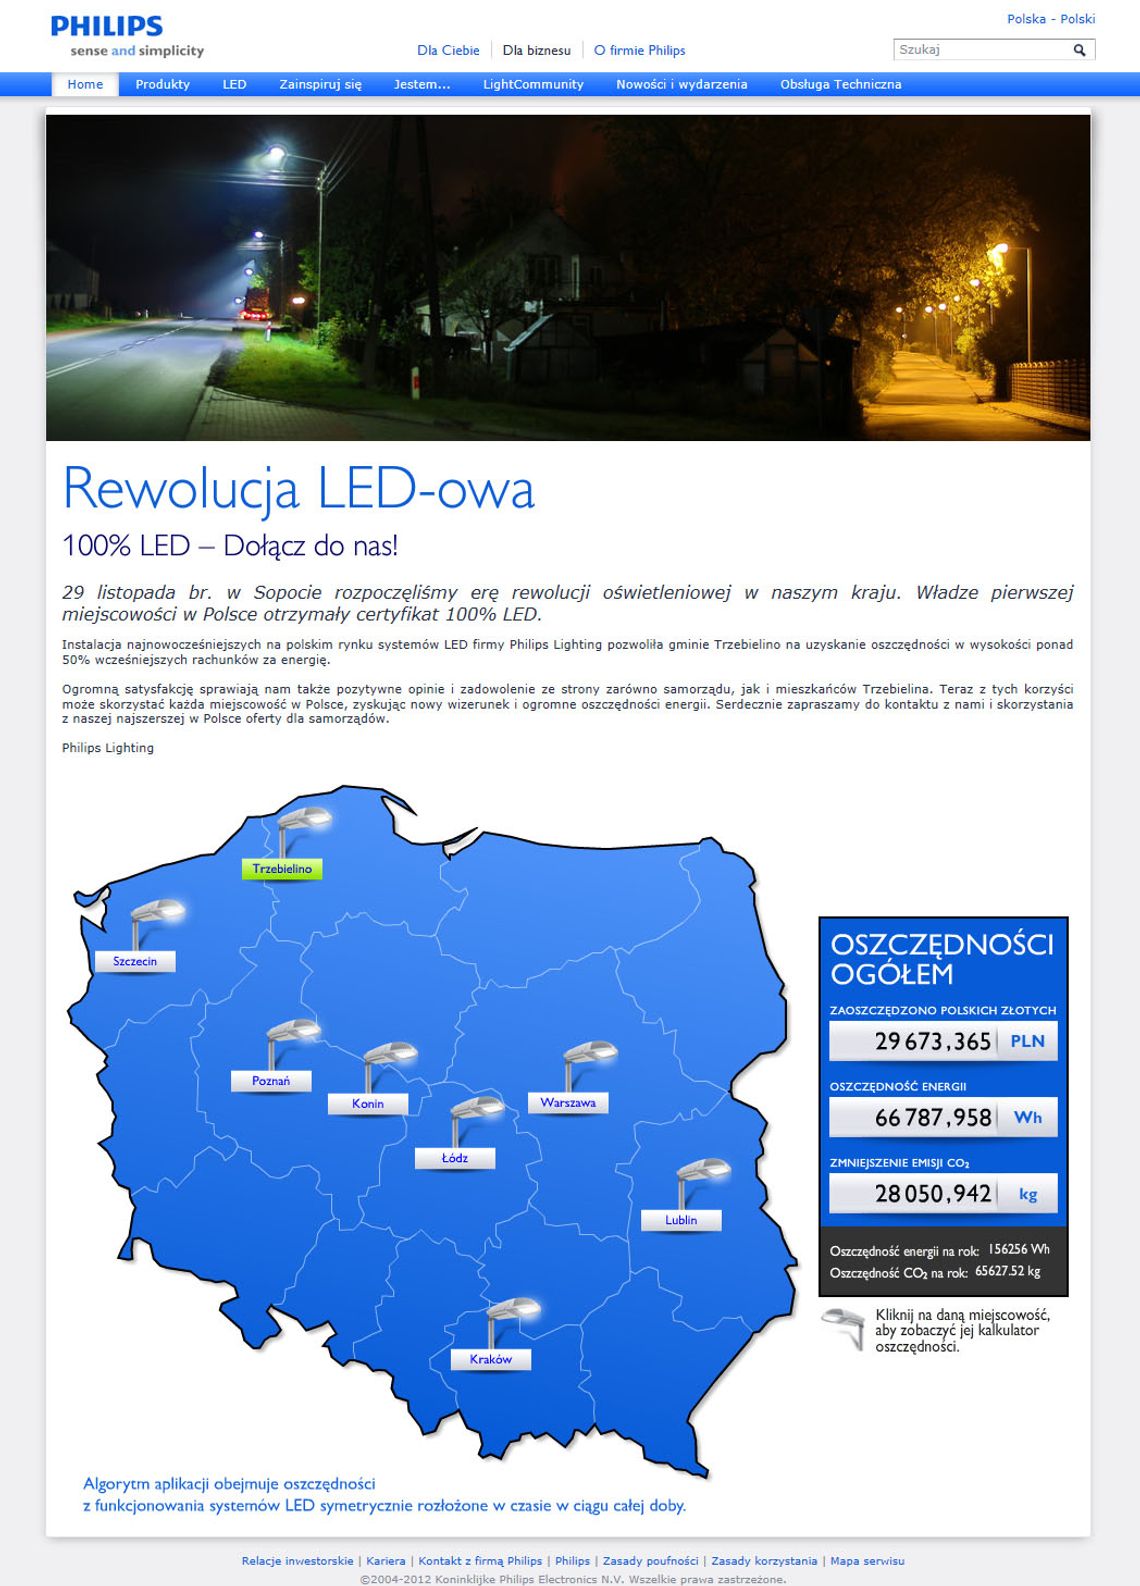 LEDy zaczynają oświetlać polskie ulice